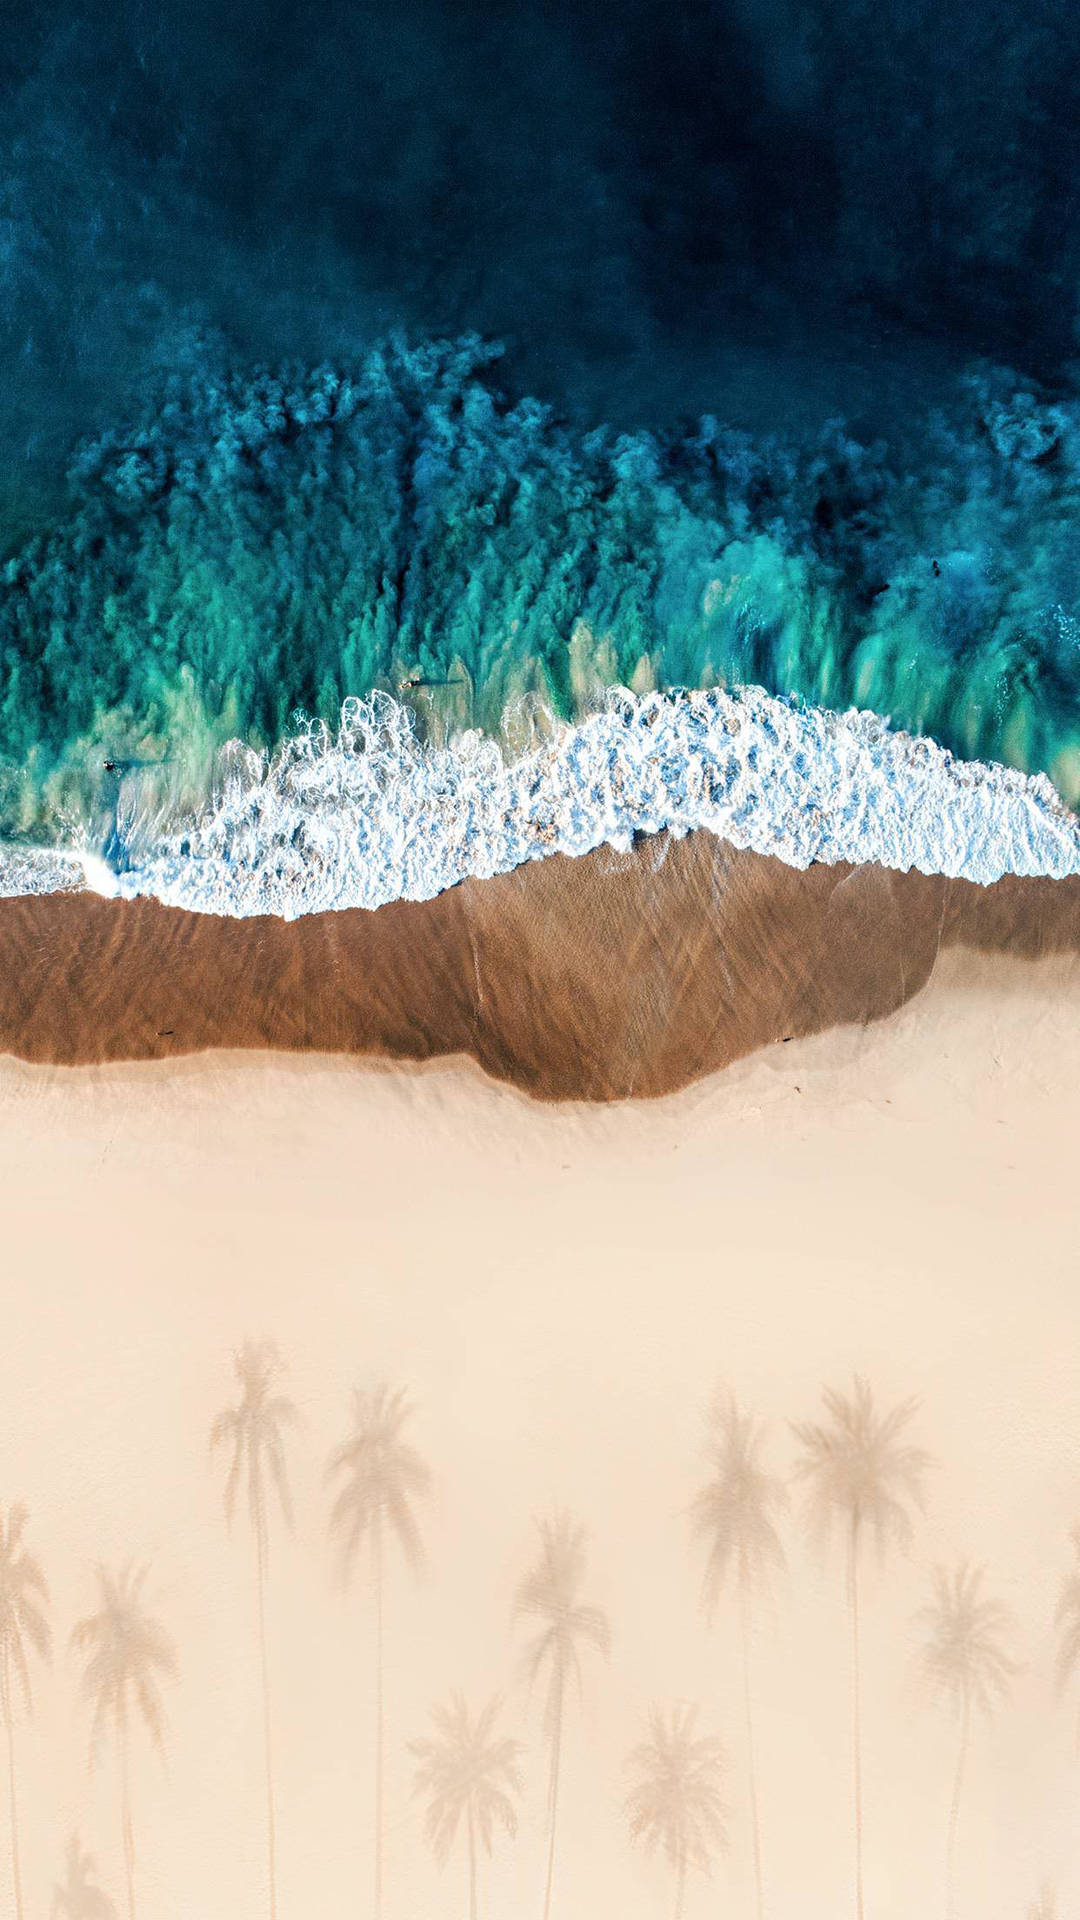 Ipad Pro Beach Shore With Tree Shadows Wallpaper